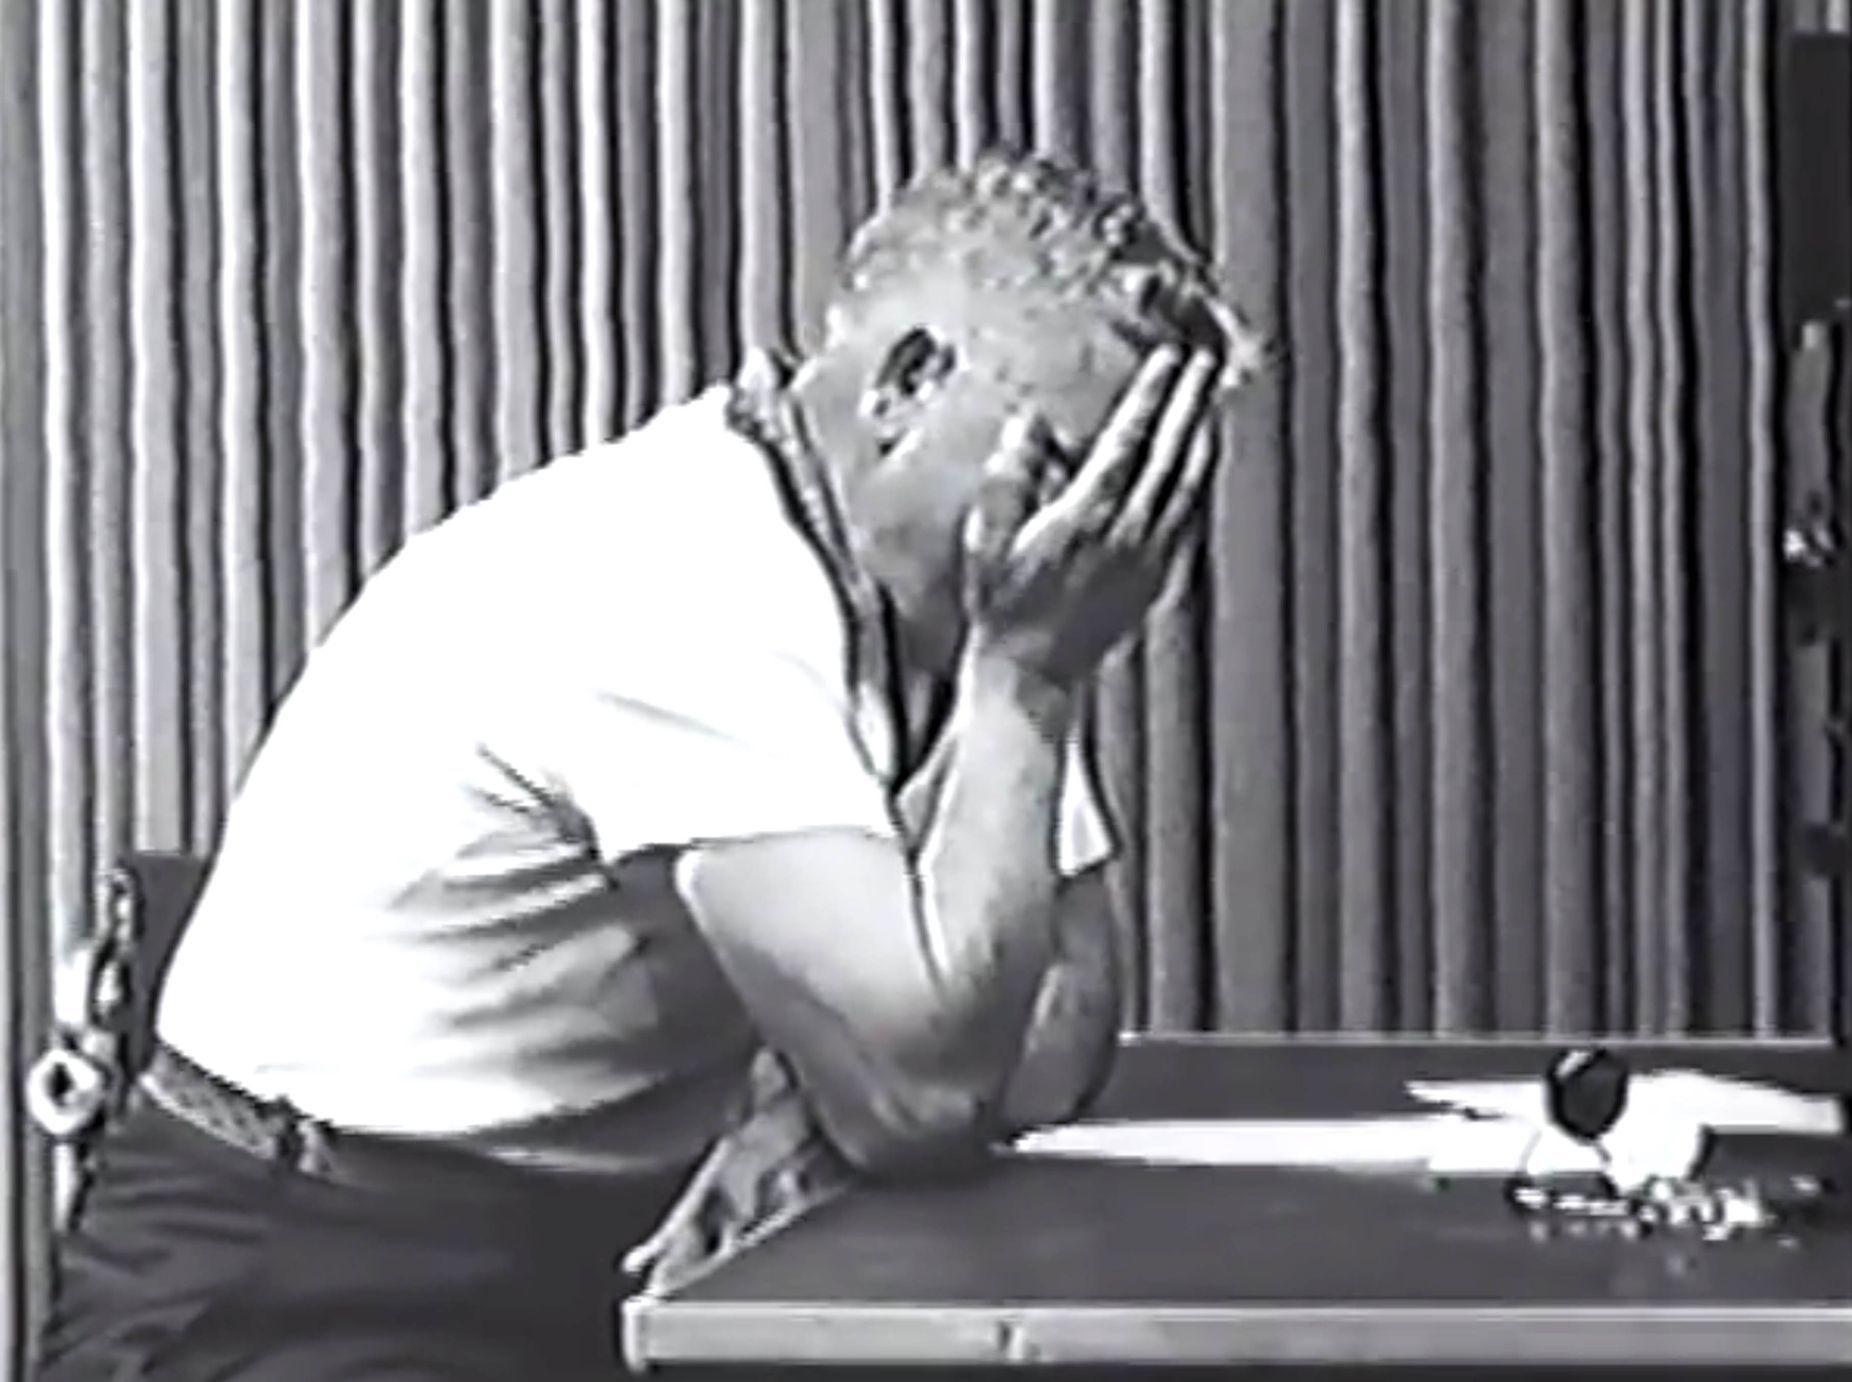 Milgramův experiment